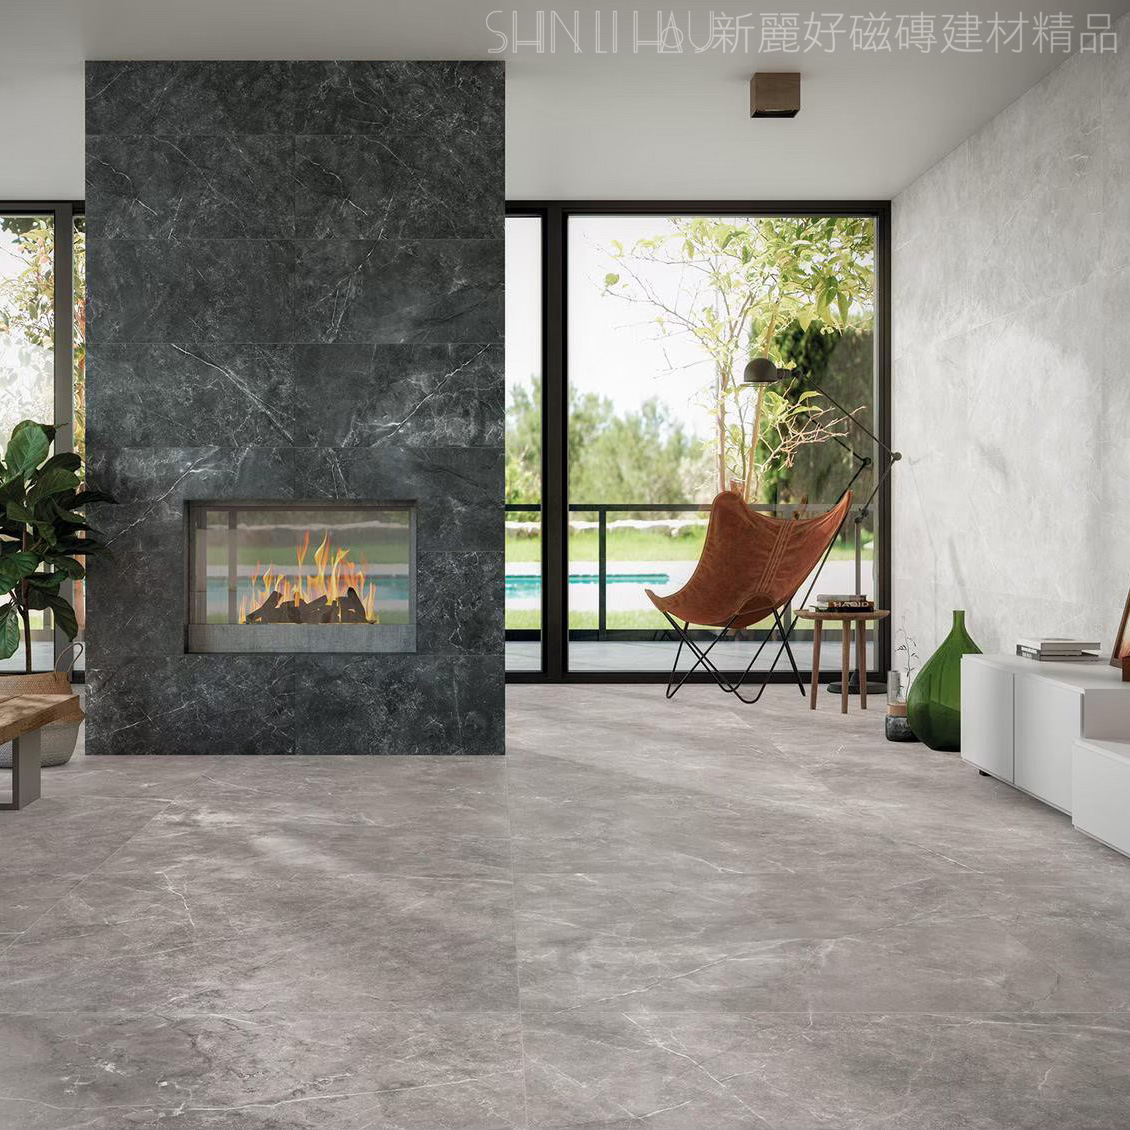 客廳地板磁磚特價-馬奇爾止滑石紋磚 每坪特價3960元 - 灰